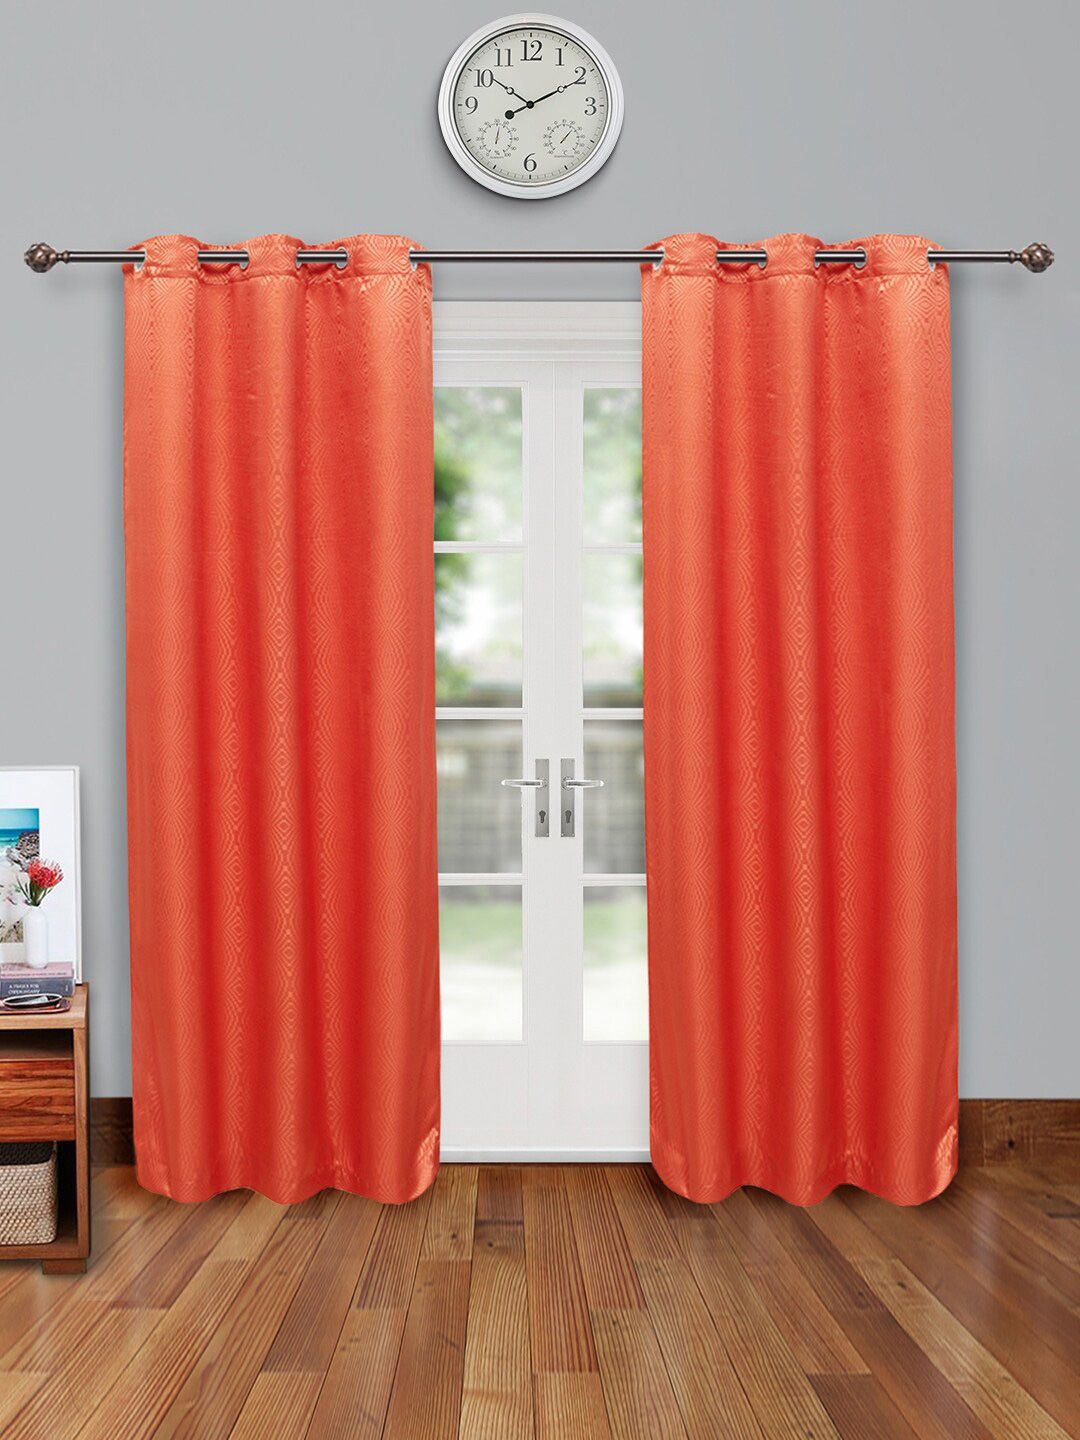 HomeTown Set of 2 Rust Door Curtain Price in India